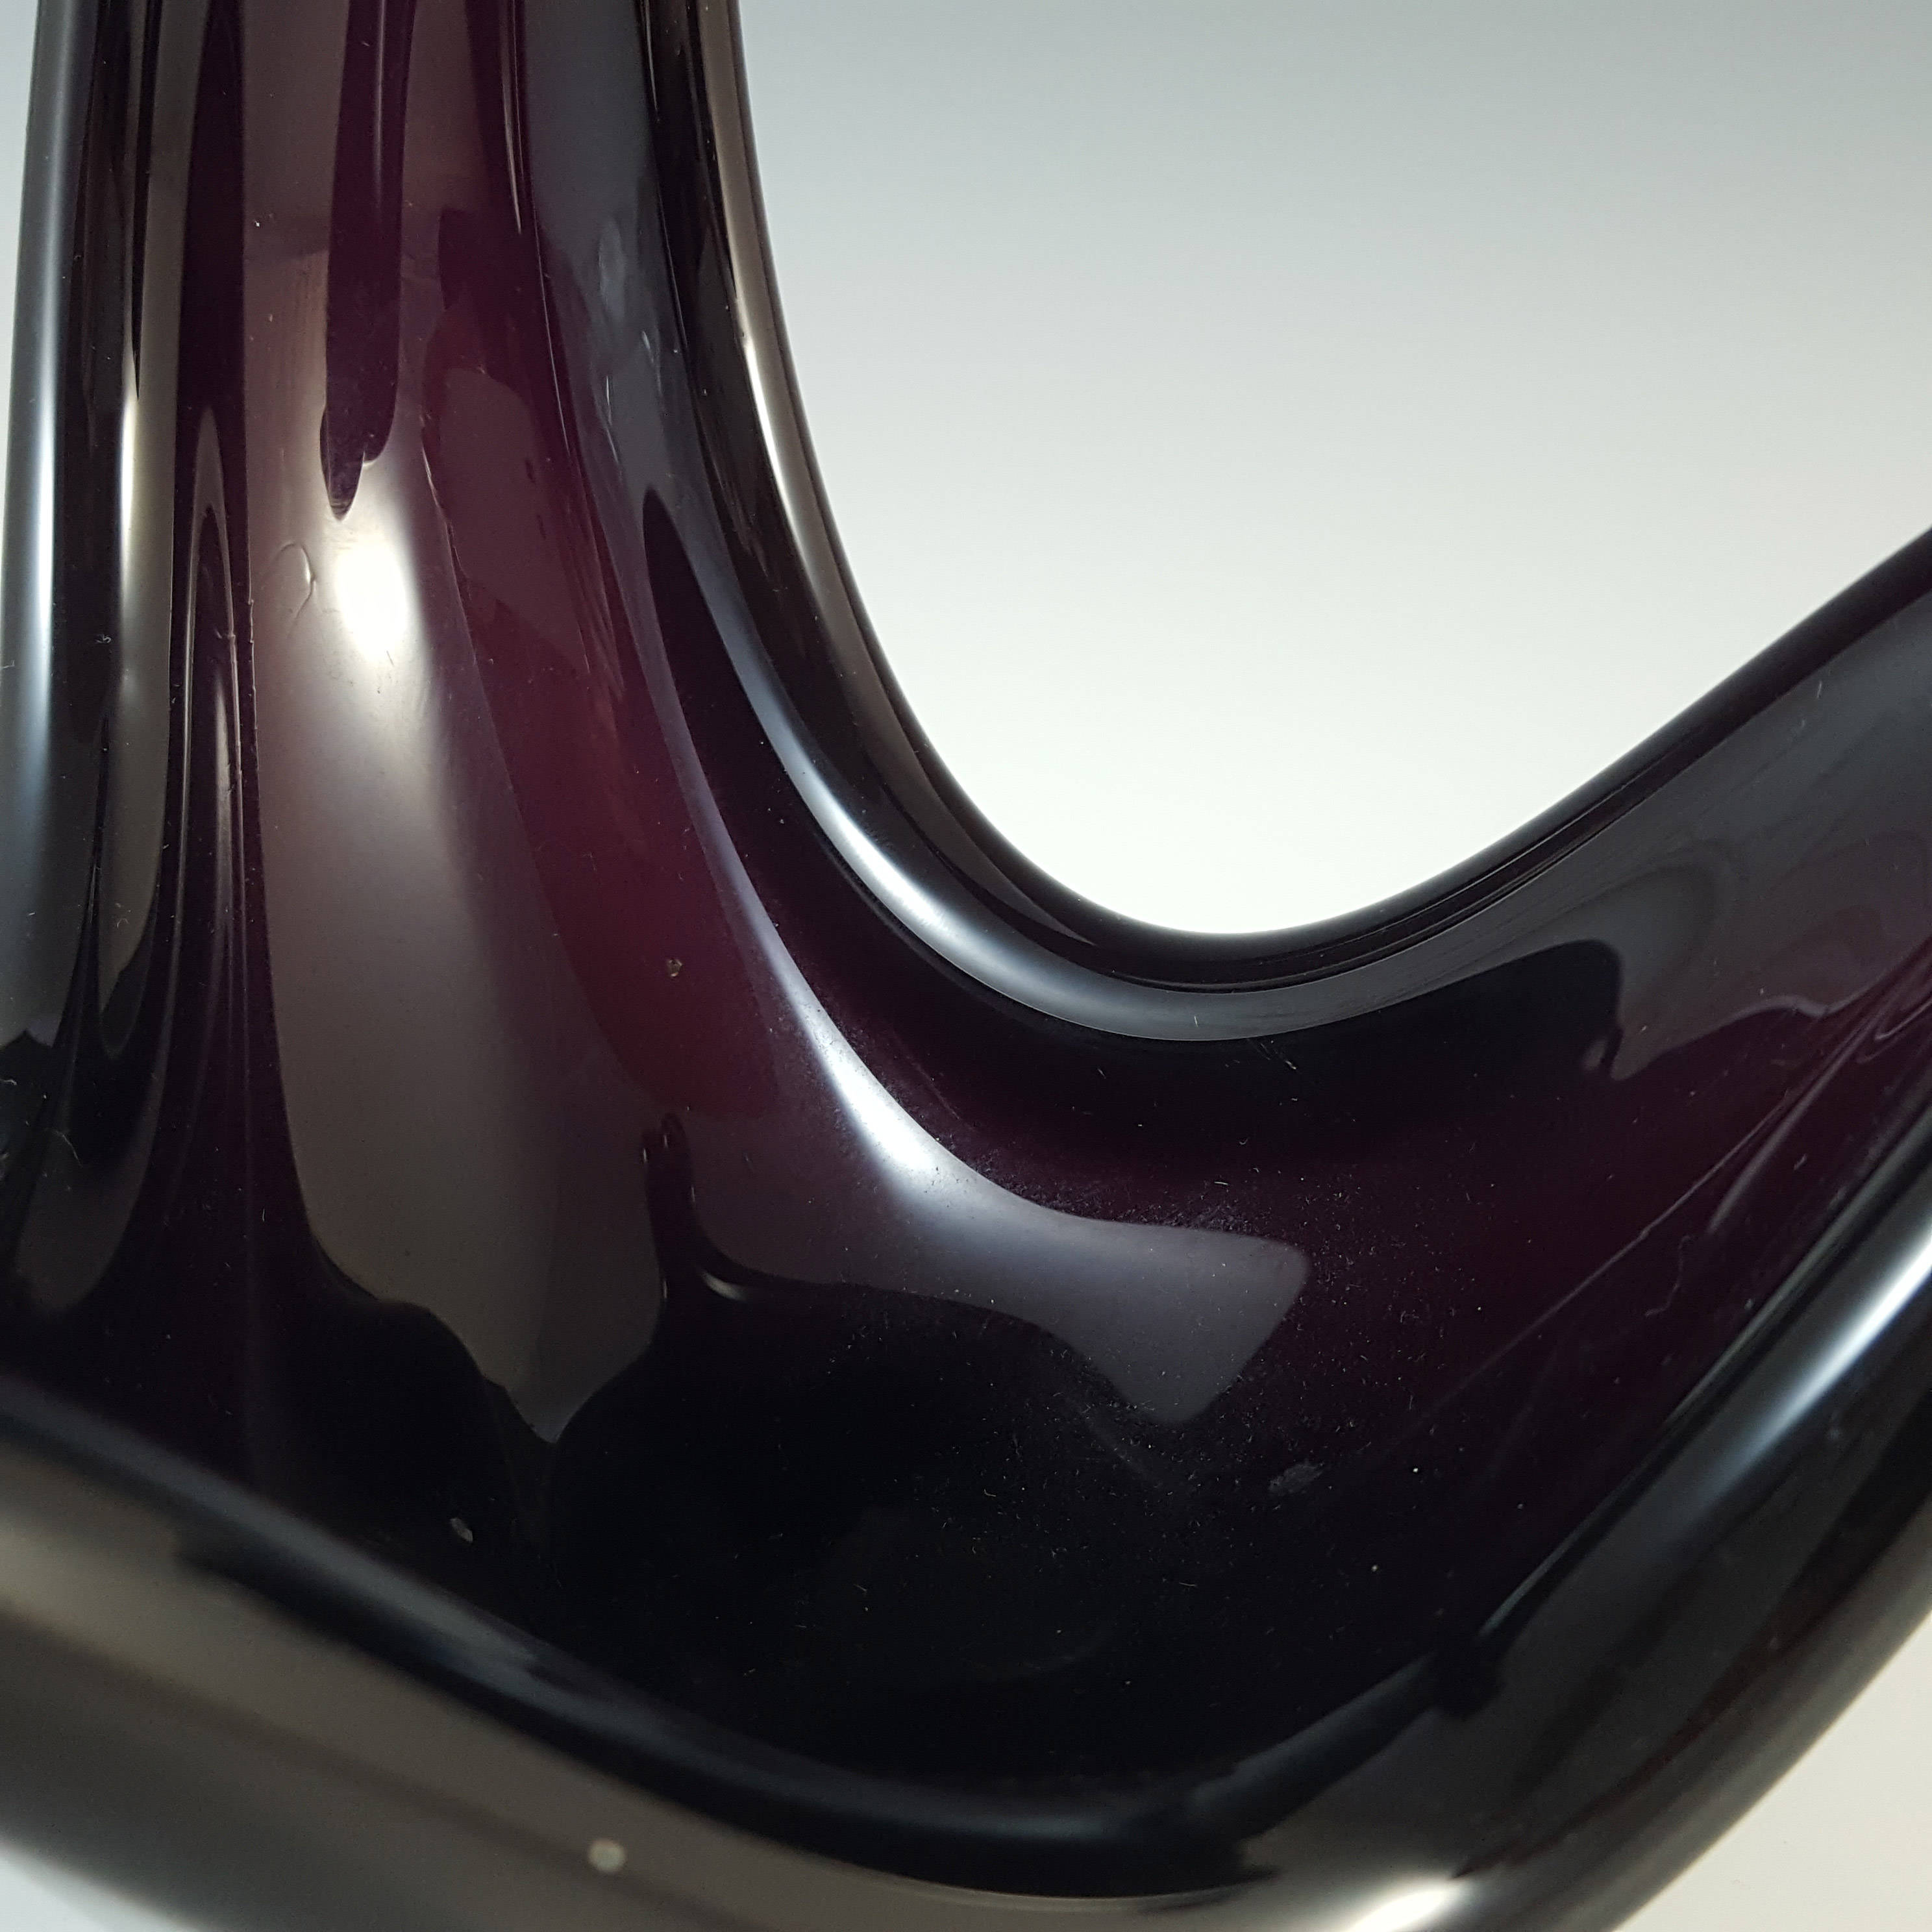 Viartec Murano Style Dark Purple Spanish Glass Sculpture - Click Image to Close